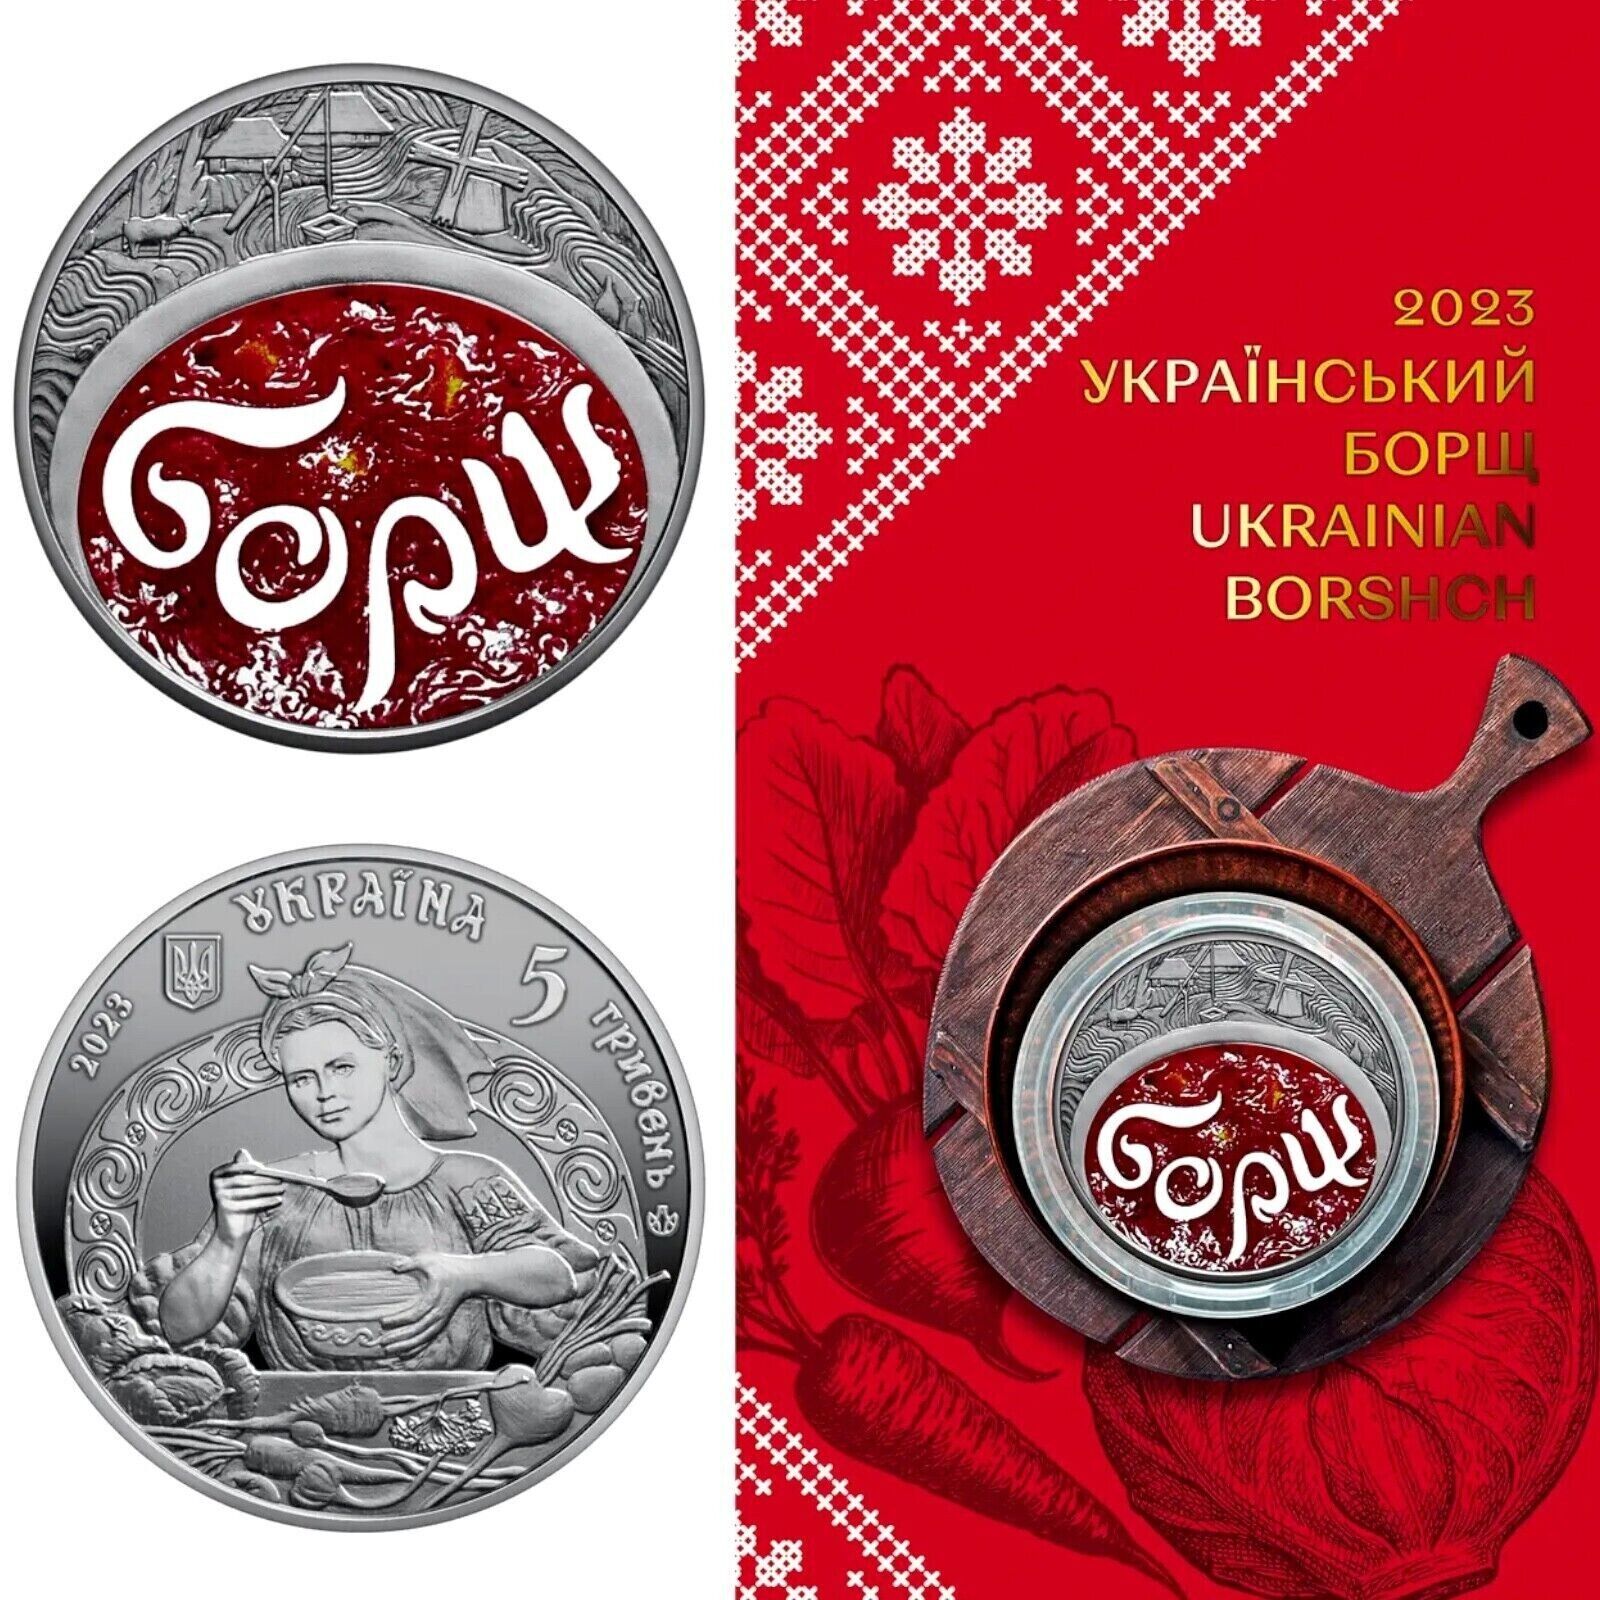 Ukrainian Souvenir Coin “Ukrainian Borshch”